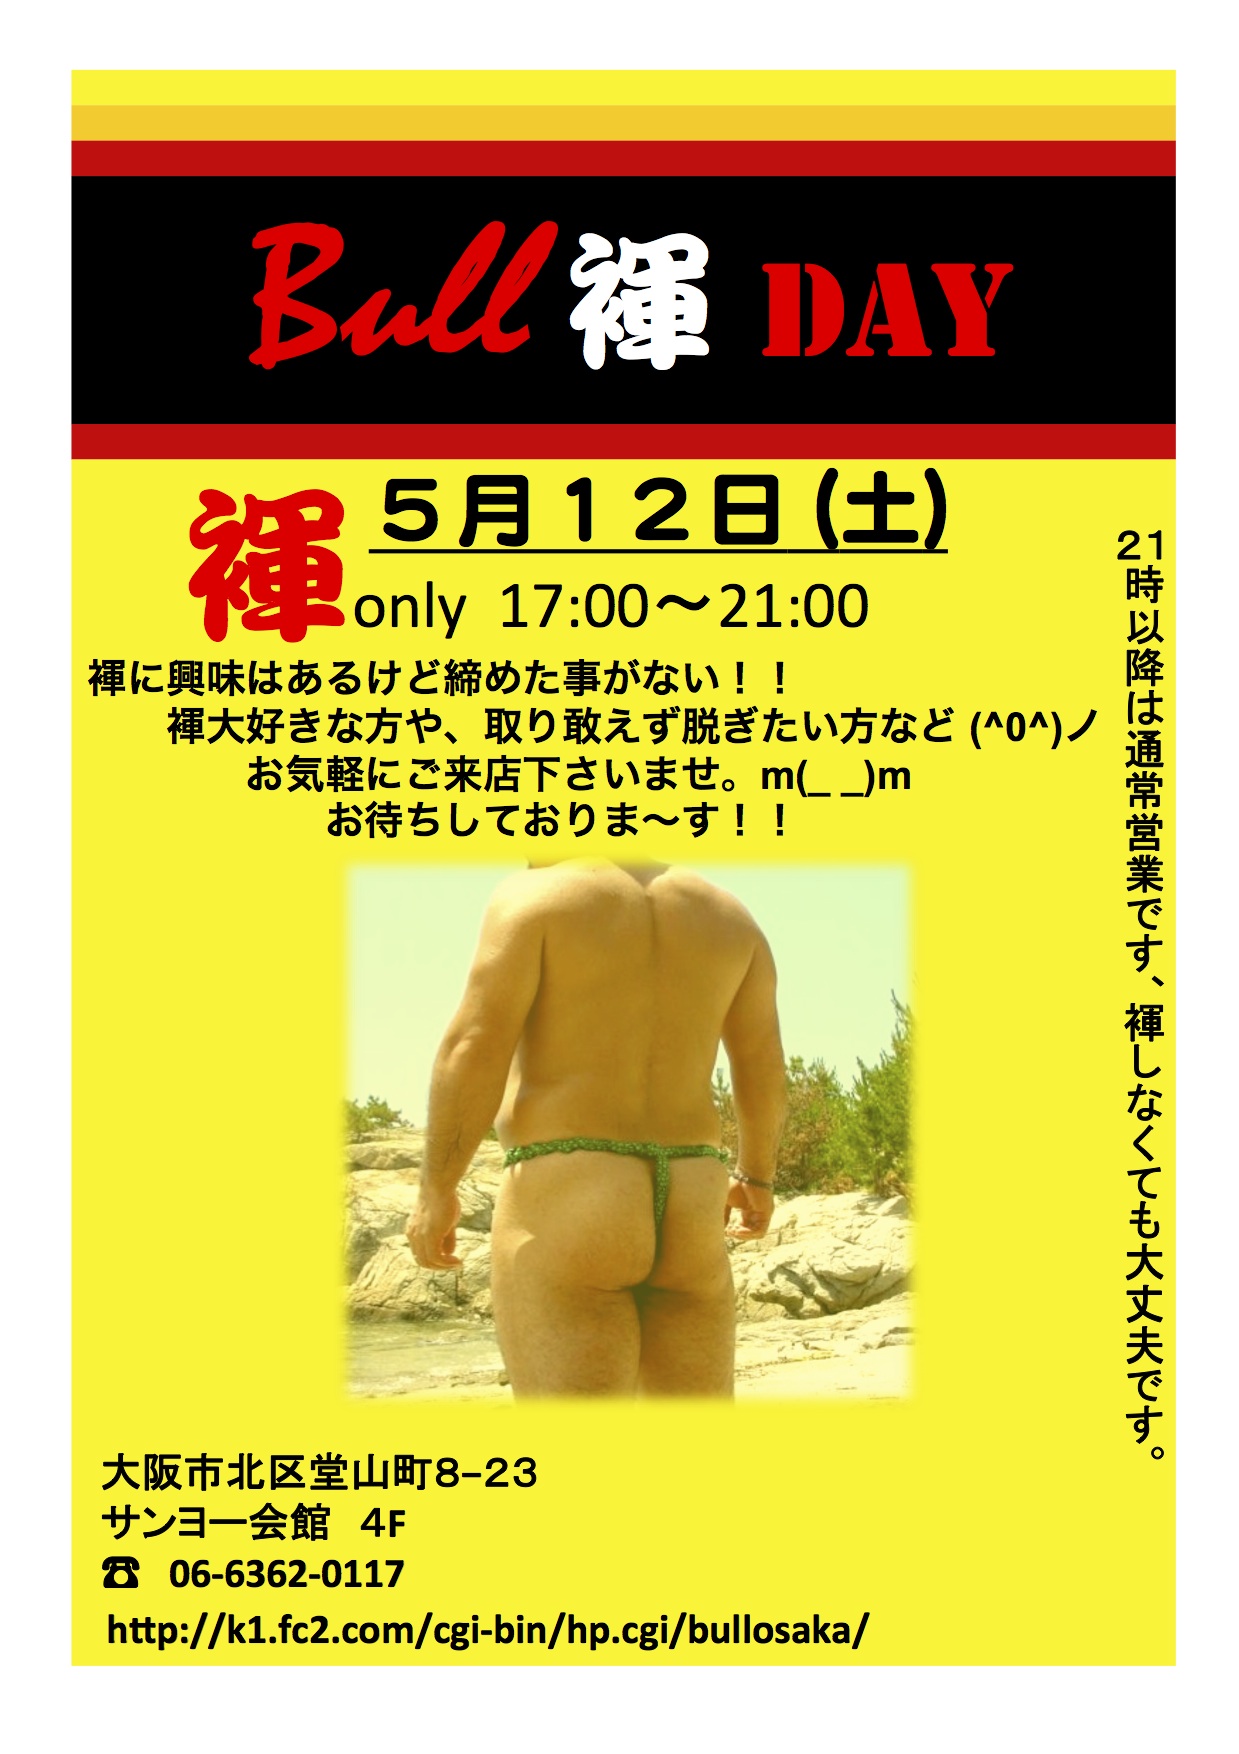 ５月１２日（土）Bull褌DAY